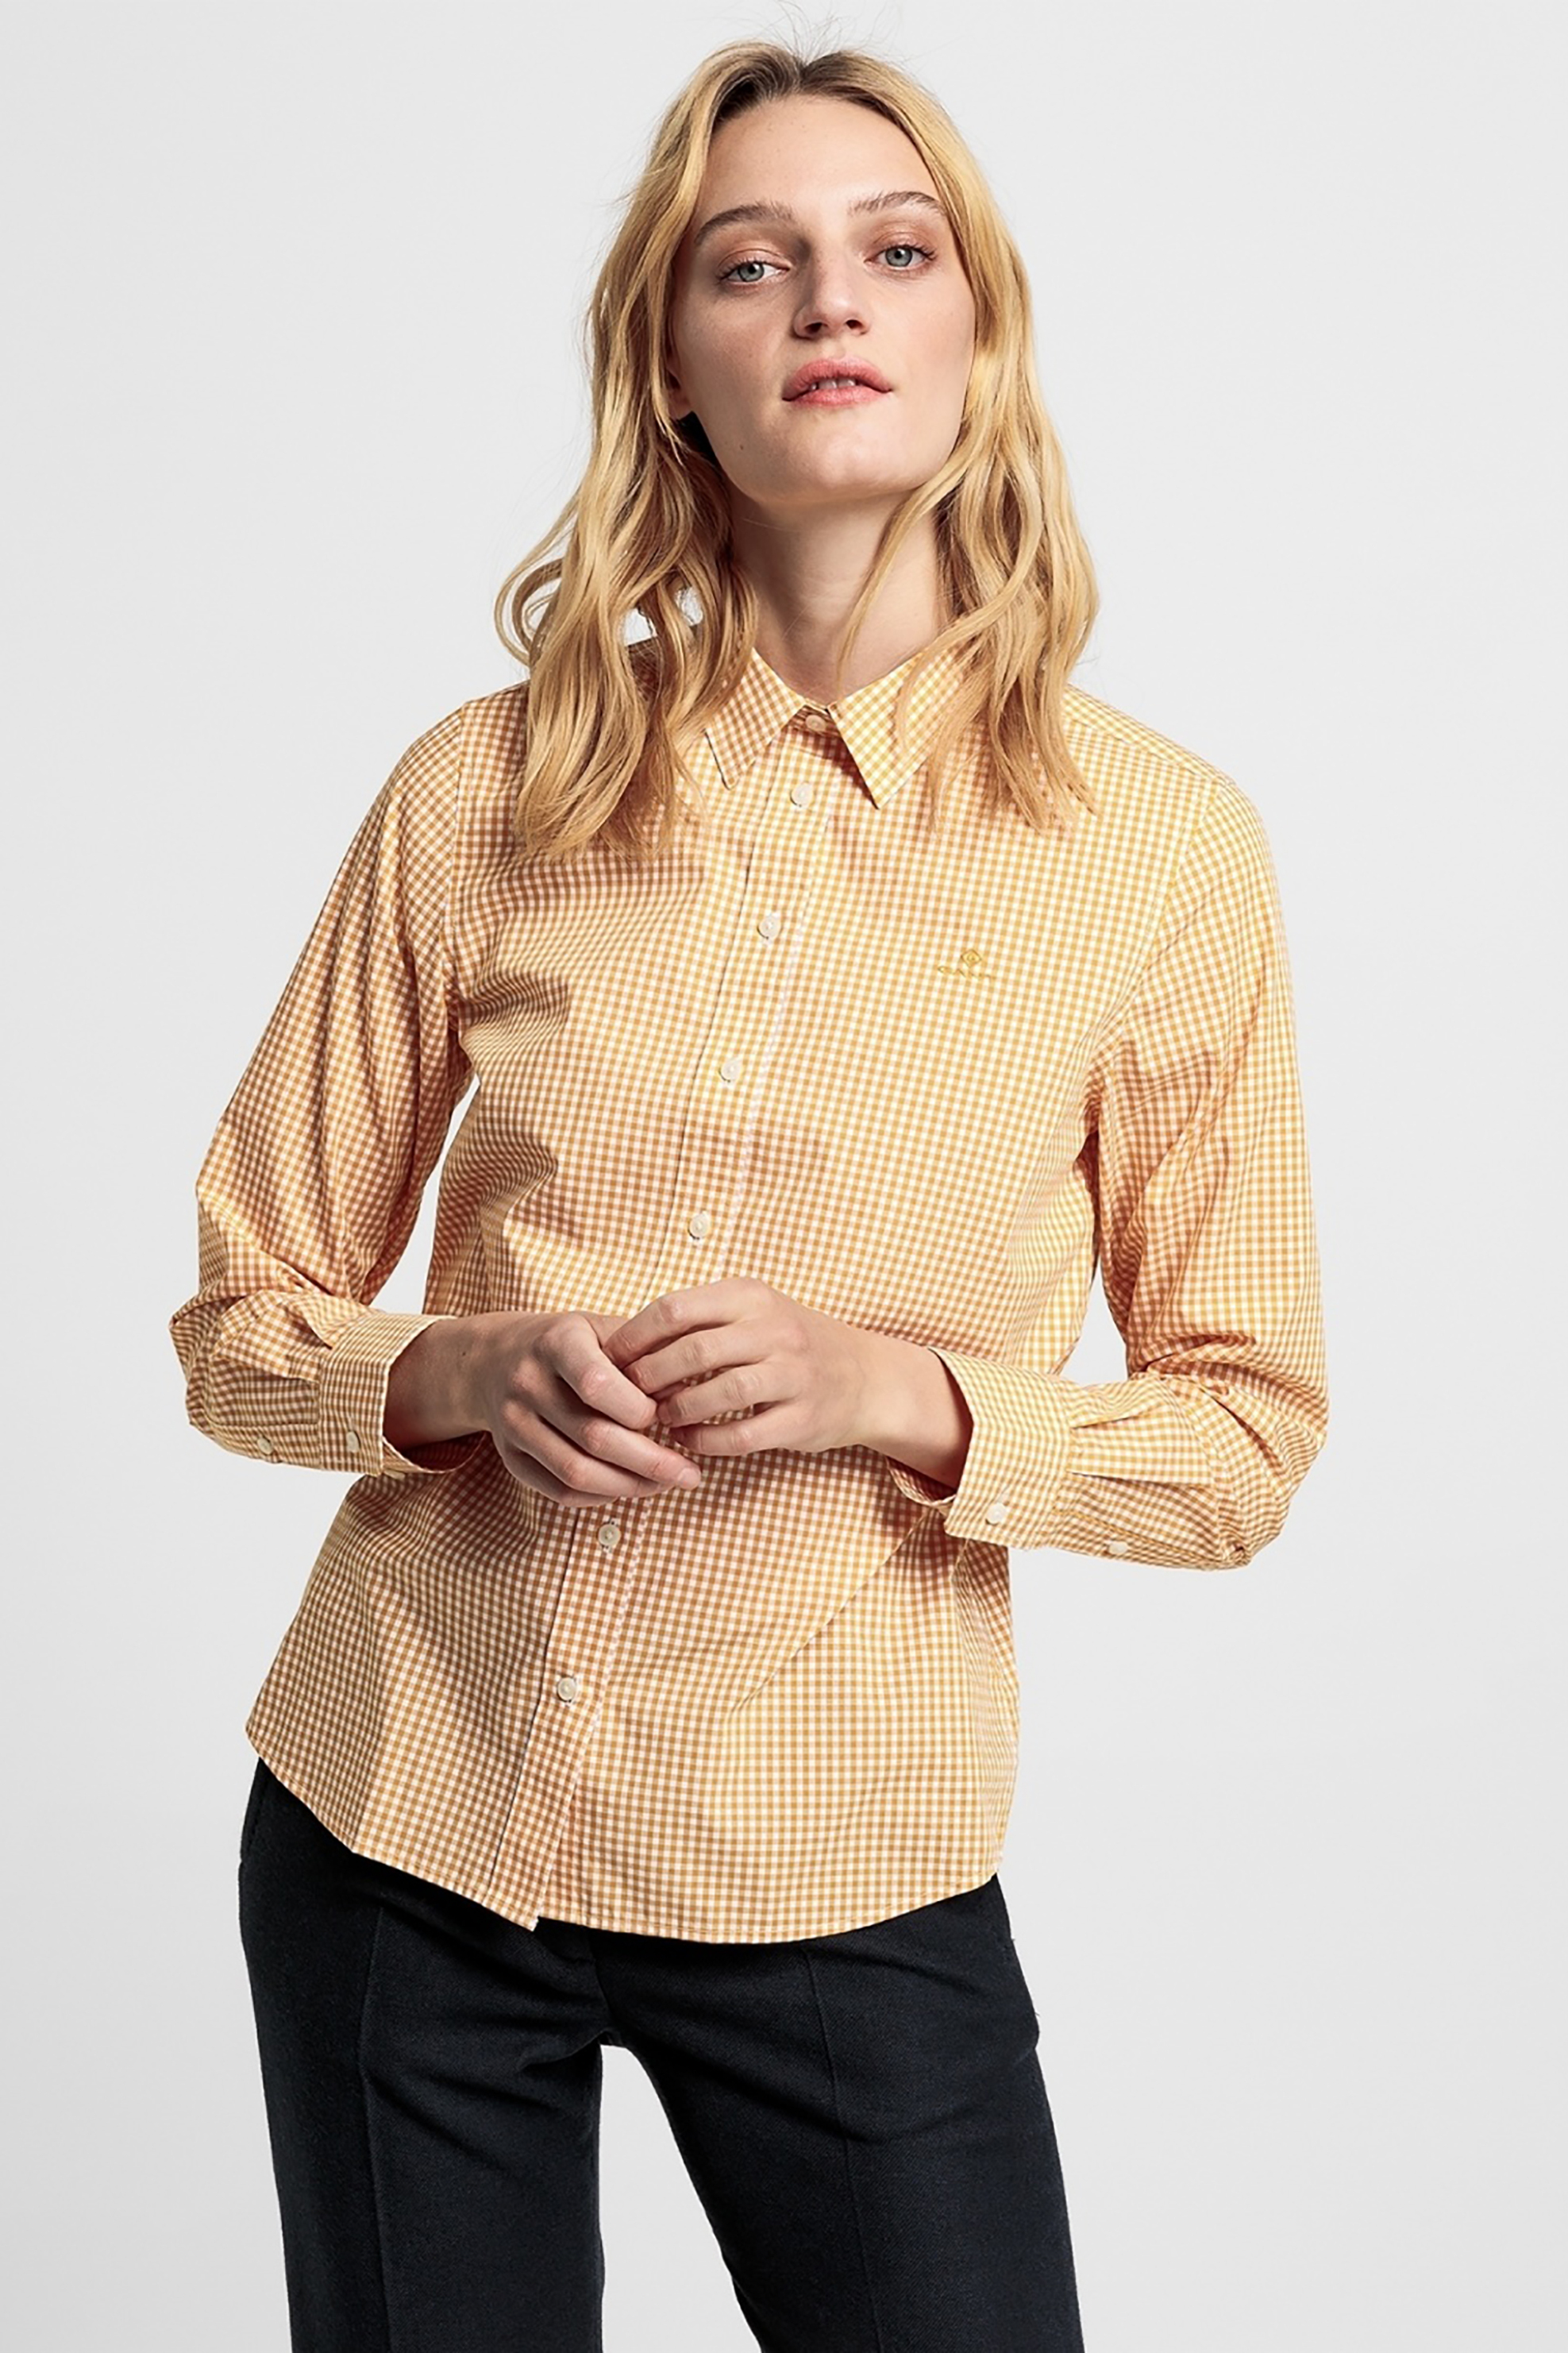 Γυναίκα > ΡΟΥΧΑ > Πουκάμισα > Casual Gant γυναικείο πουκάμισο με μικρό καρό - 4300034 Κίτρινο